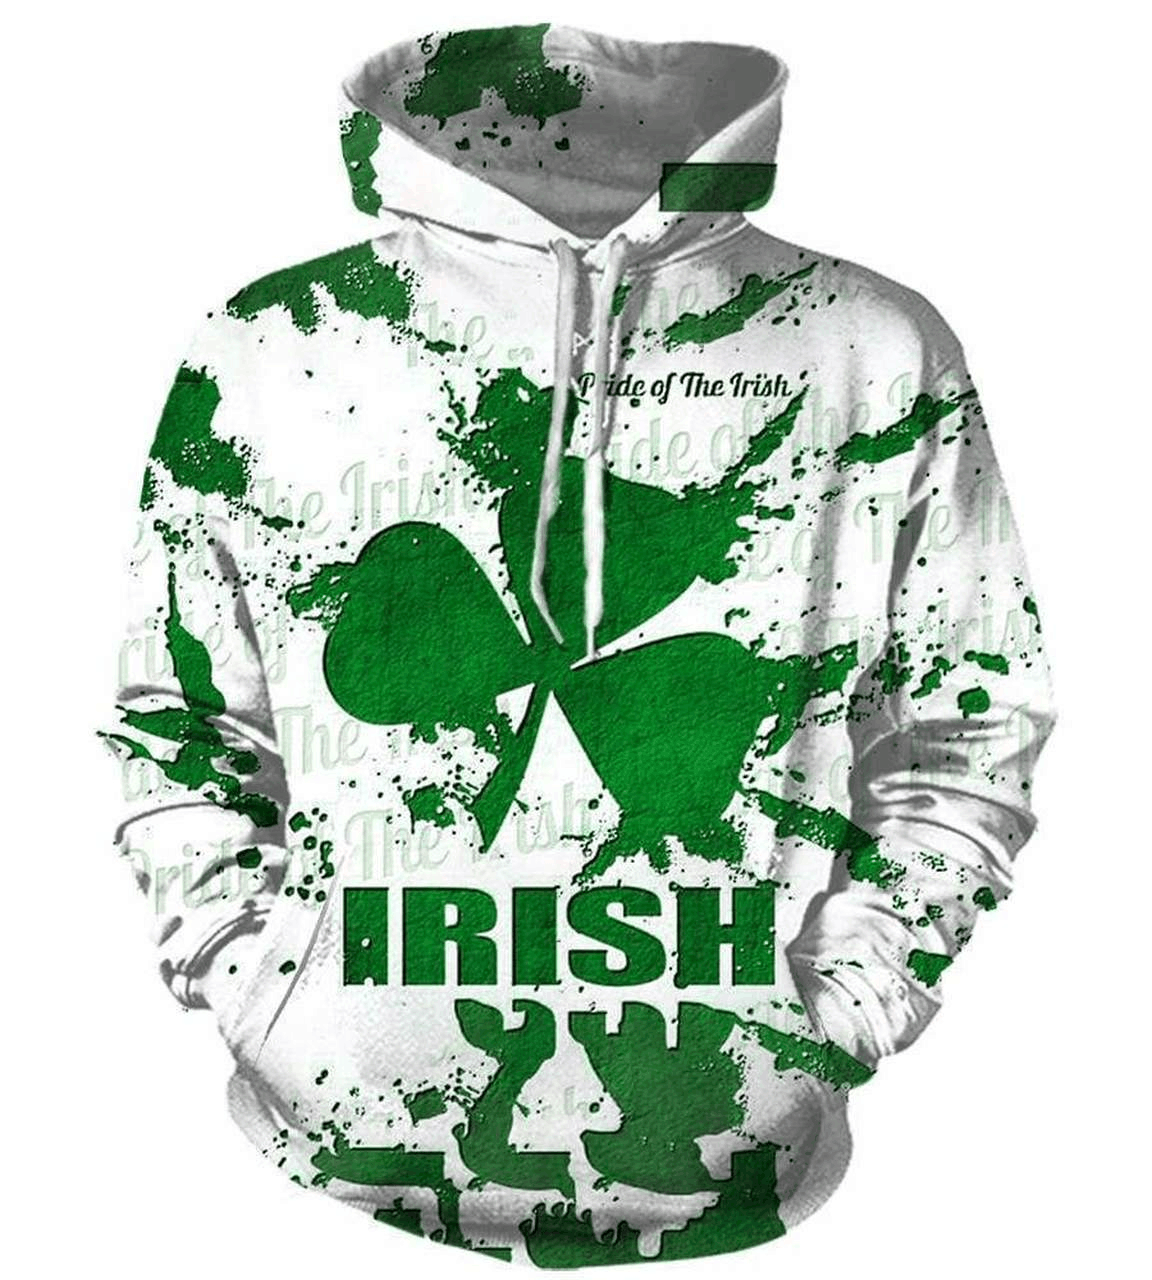 Pride of the irish saint patrick’s day full printing shirt – maria